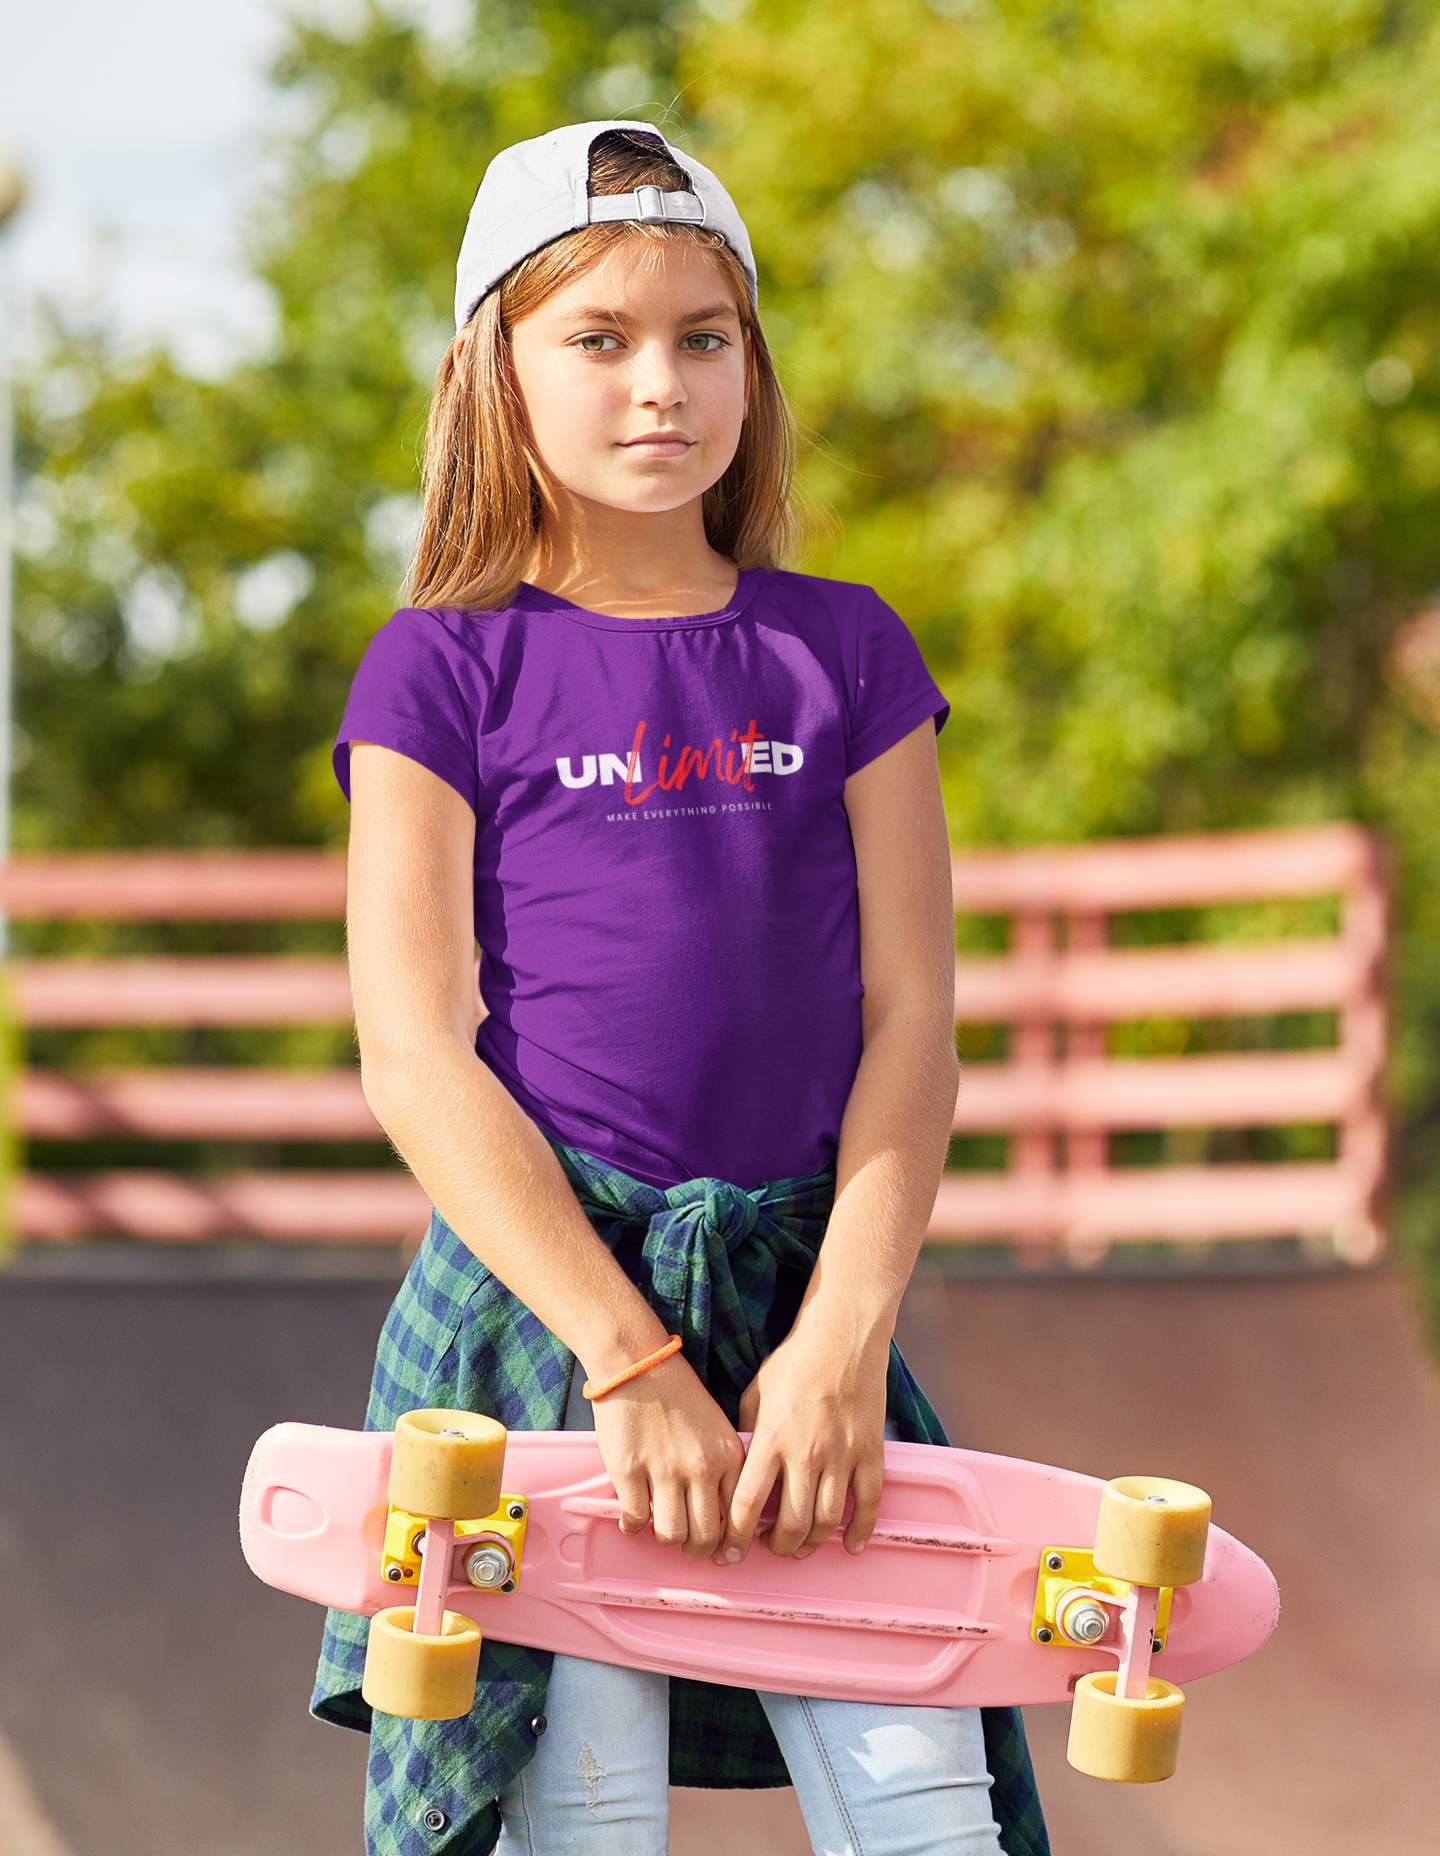 Slogan T Shirts Youth/Kids Motivational | Unlimited purple girls